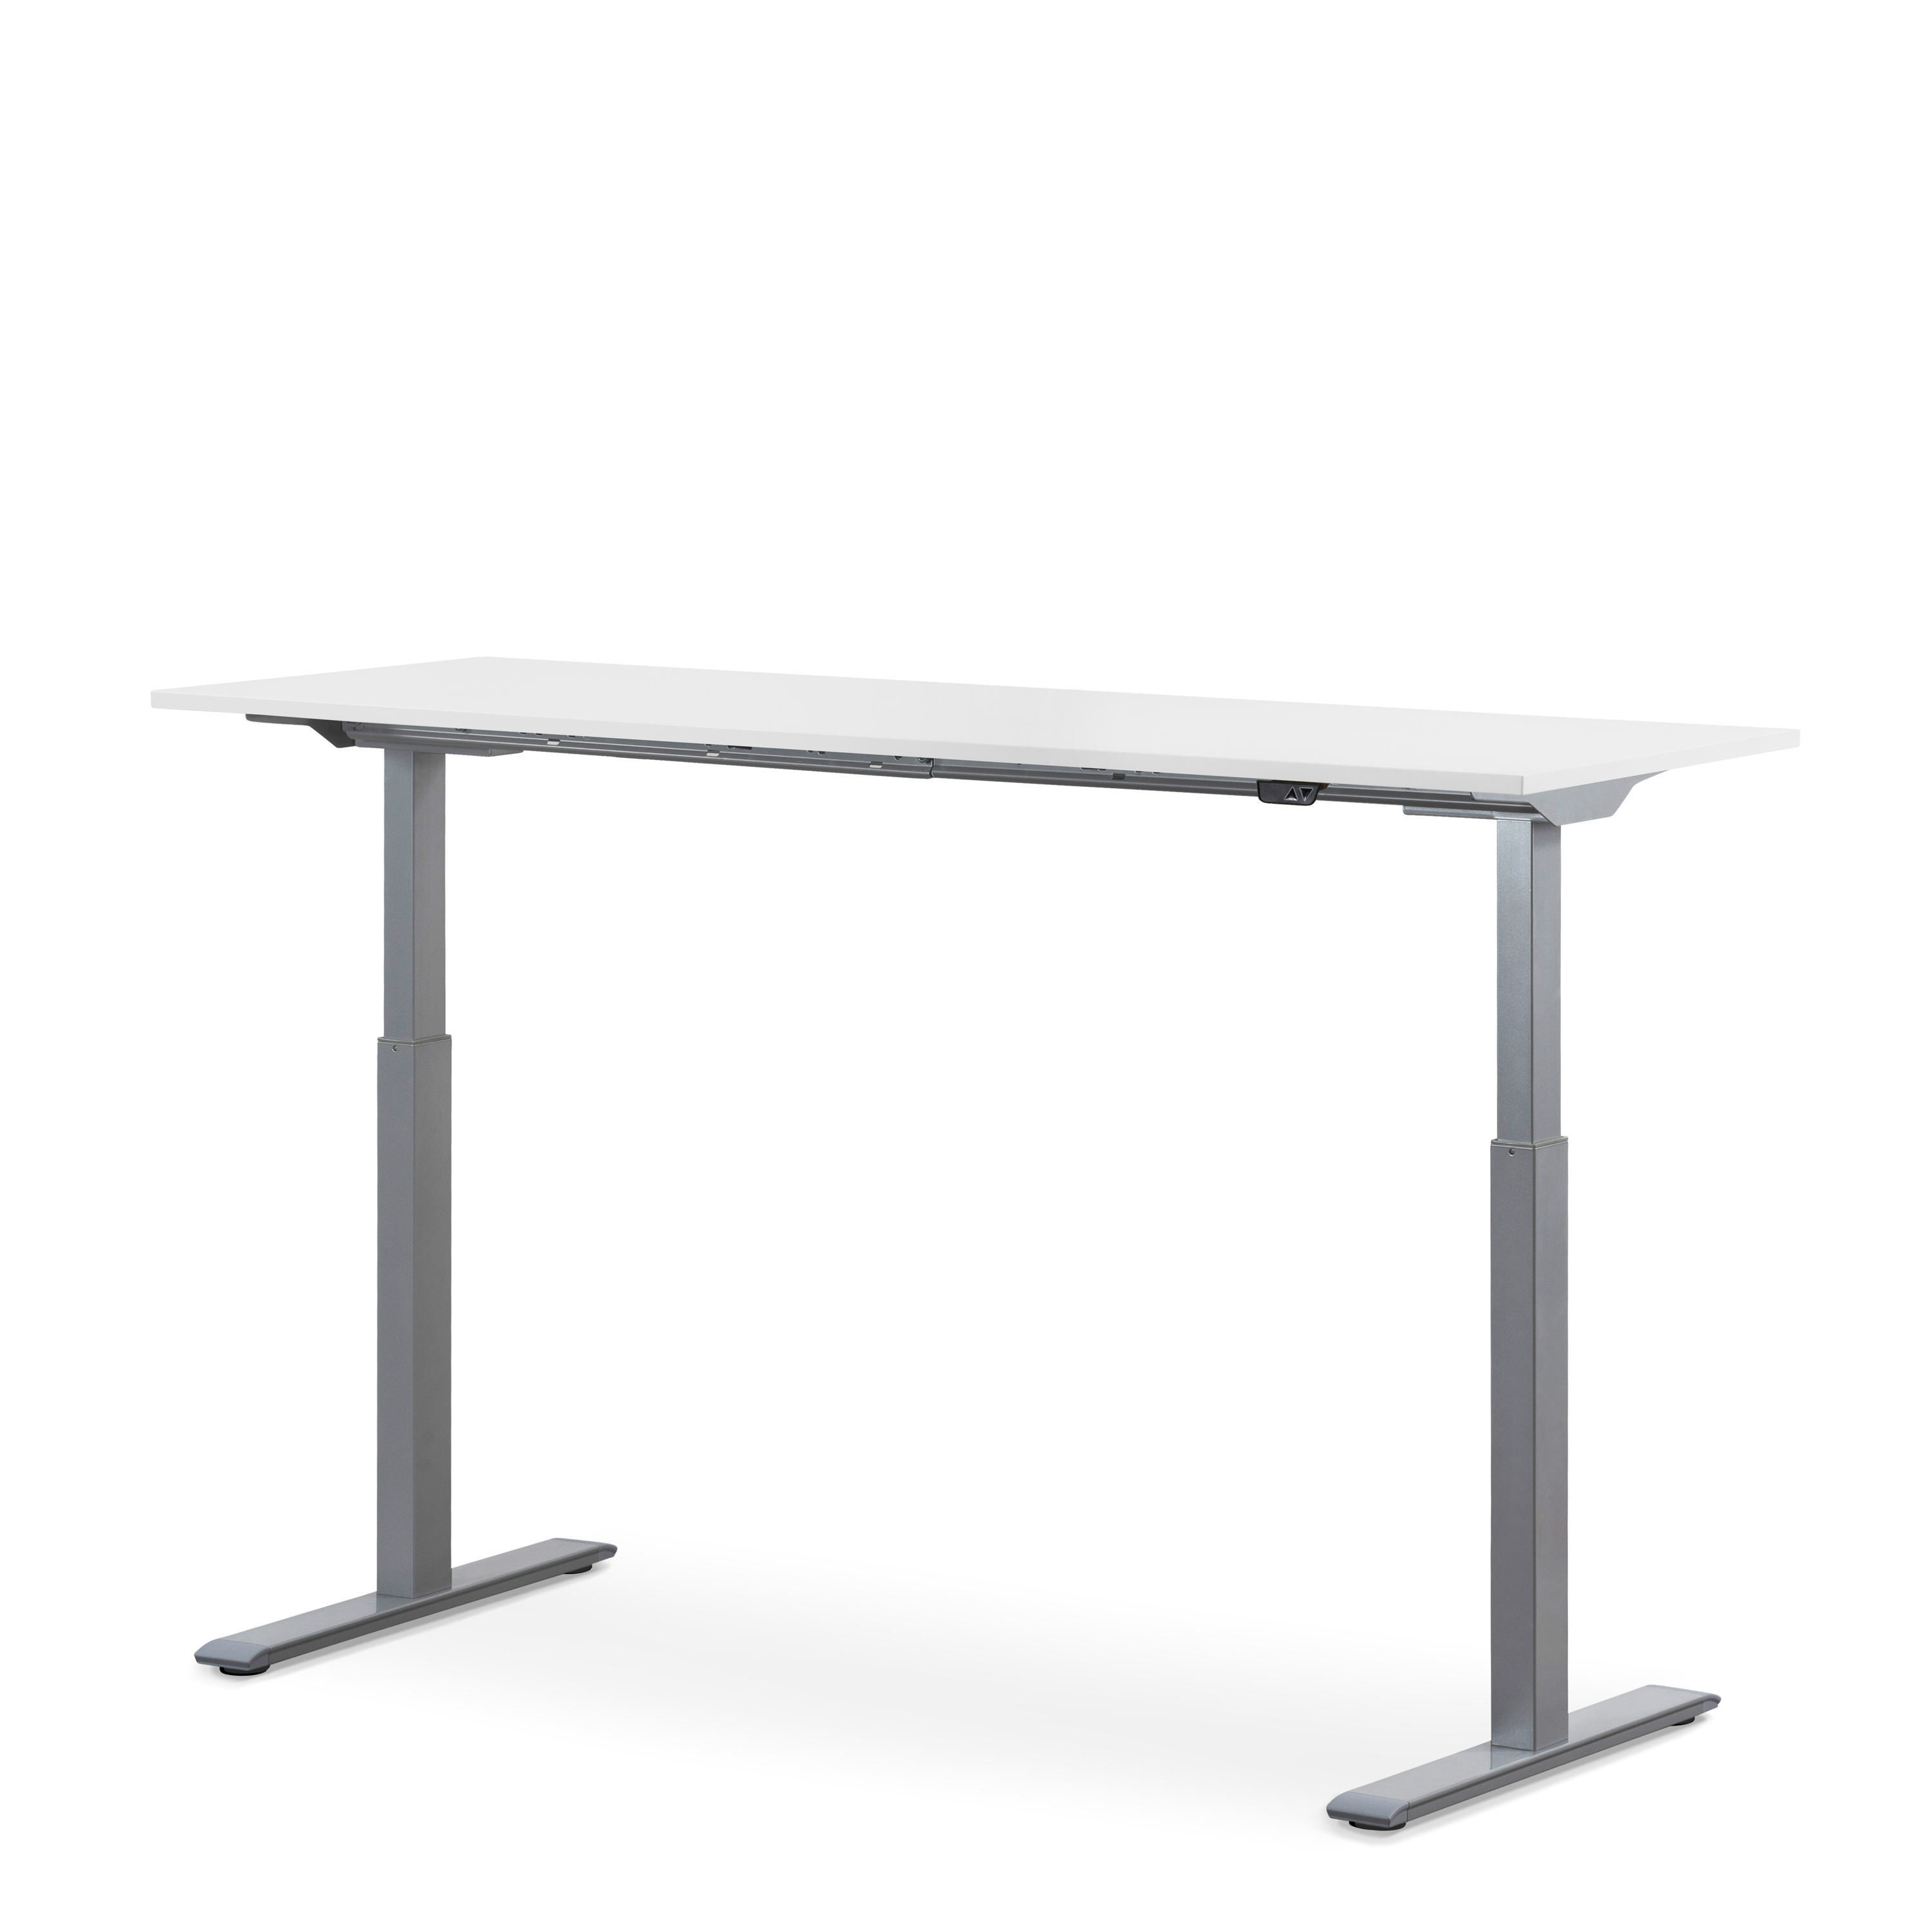 160x60 Tischgestell: Steh-Sitz elektronisch WRK21 Grau Tischplatte: höhenverstellbarer Schreibtisch, Weiß cm